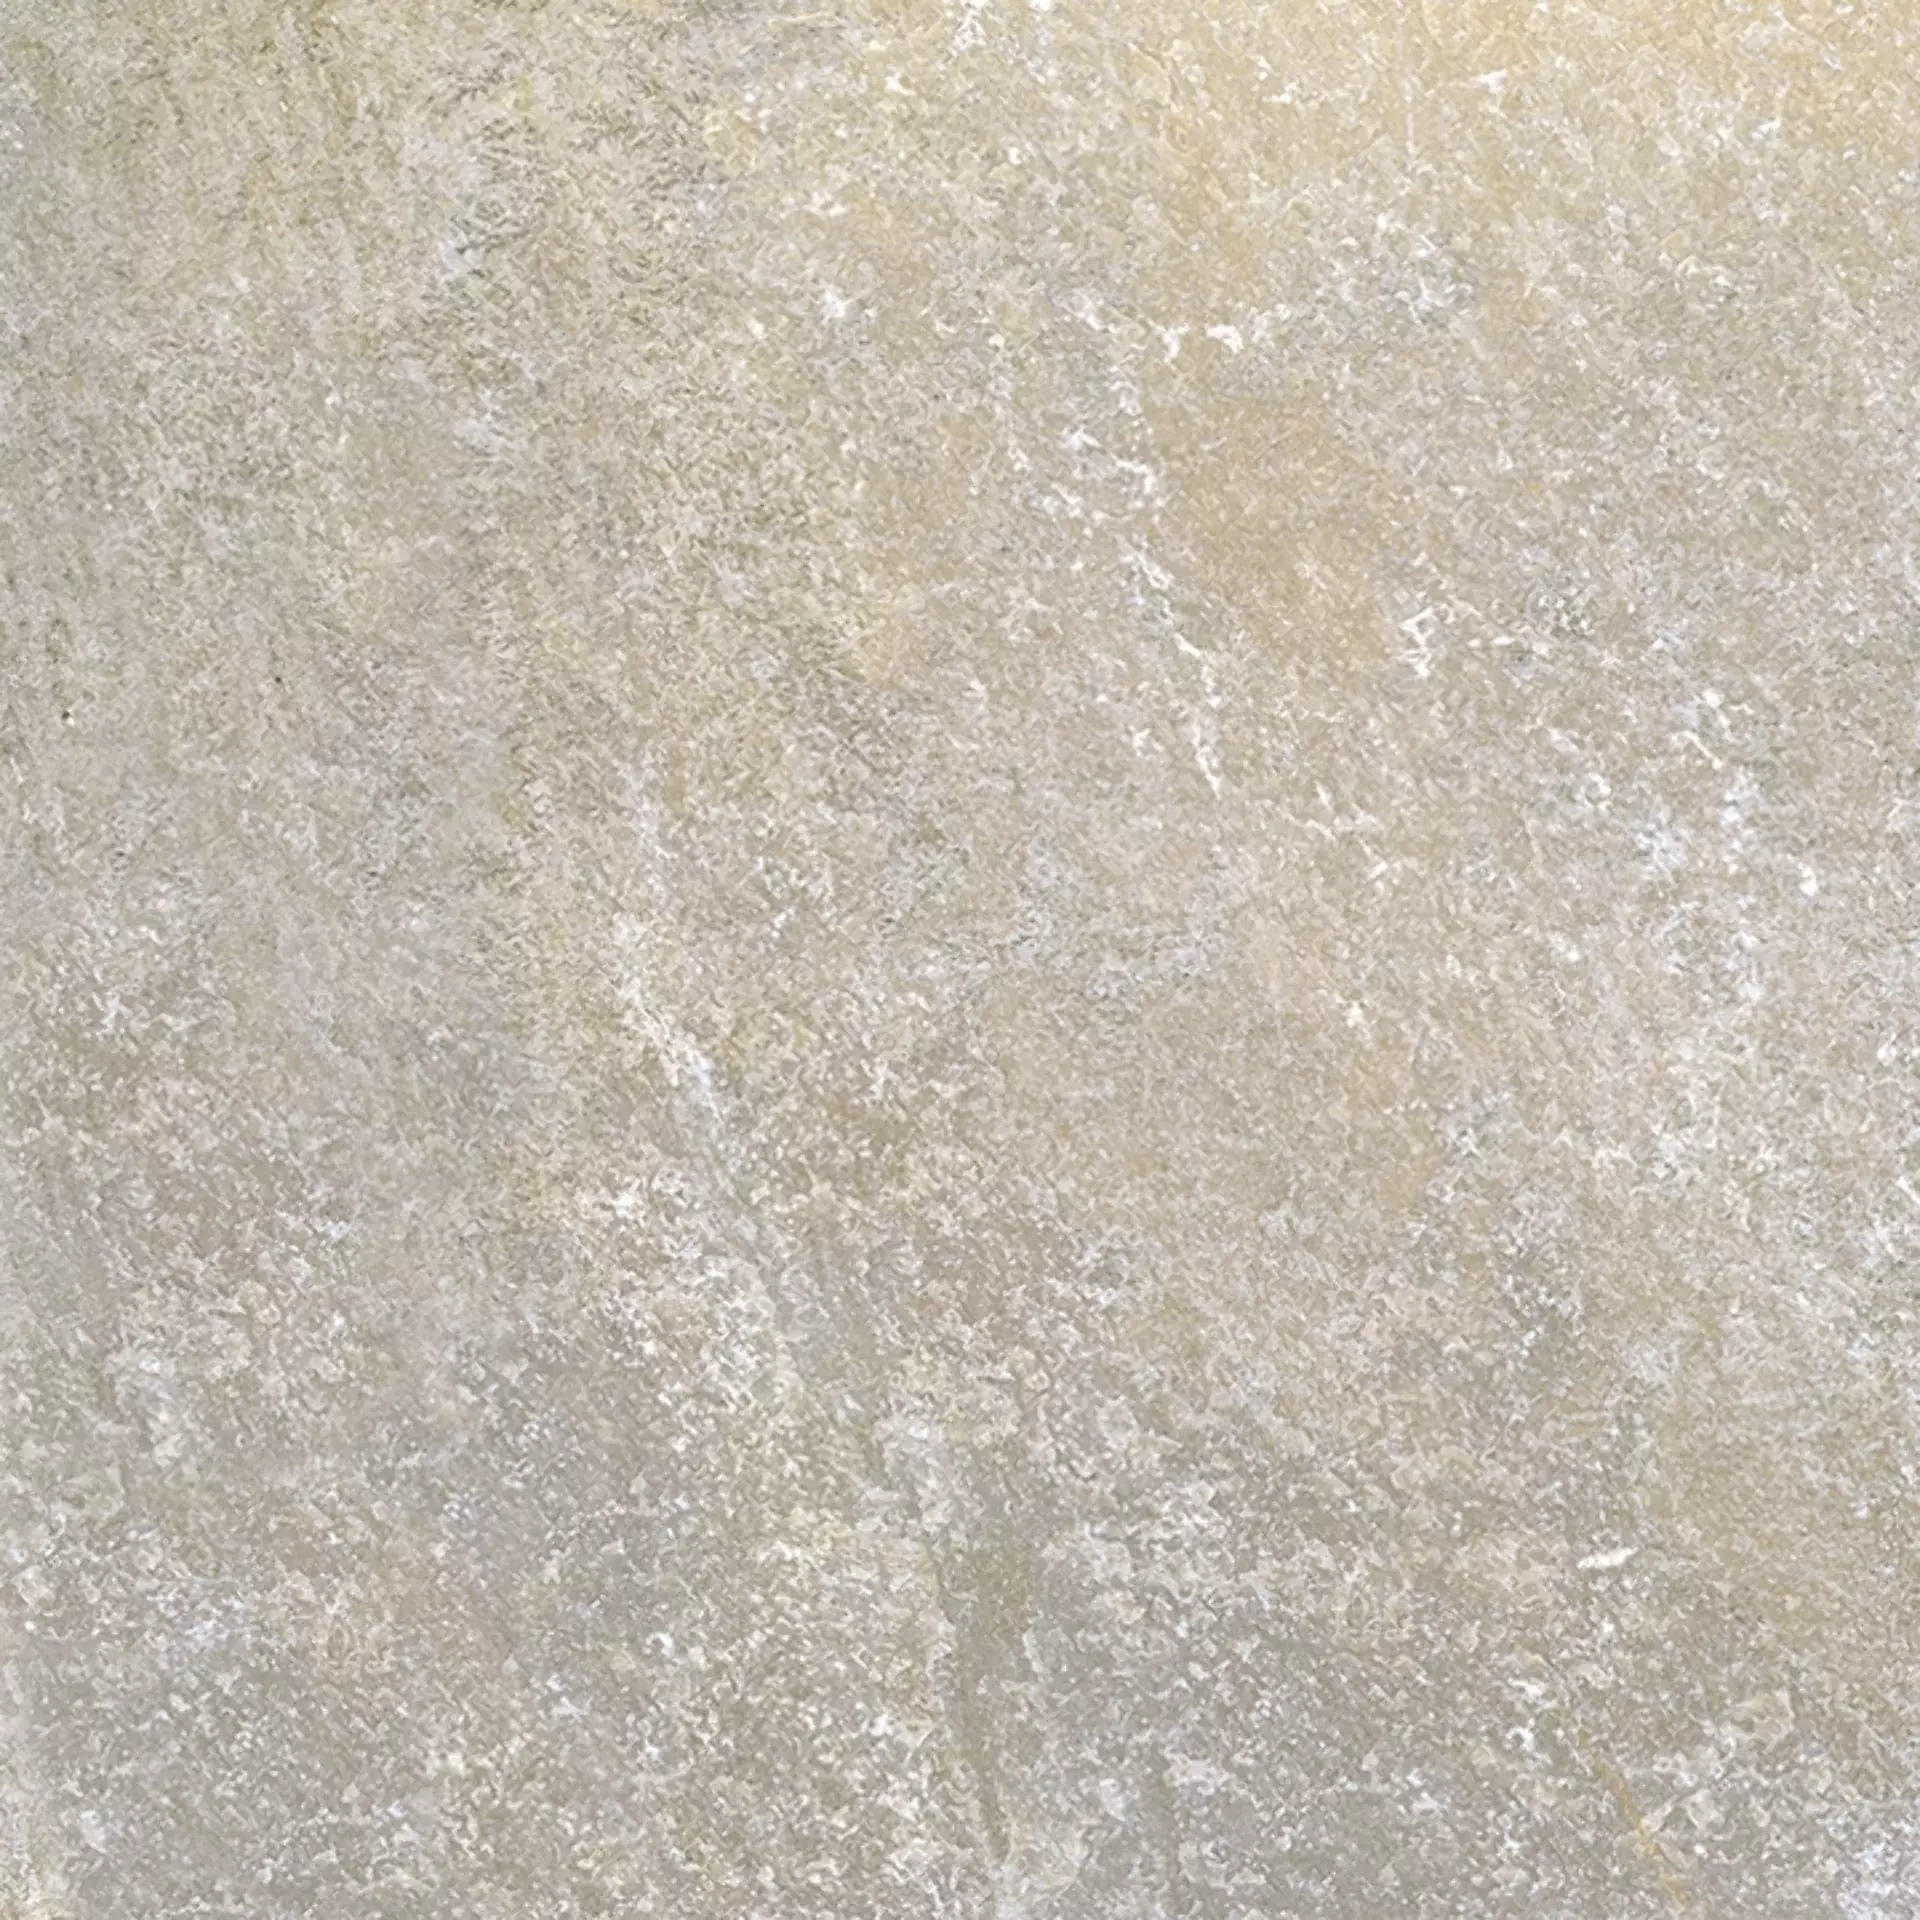 Sichenia Pave' Quarz Esterno Argento Grip 0RS6627 60x60cm rektifiziert 20mm